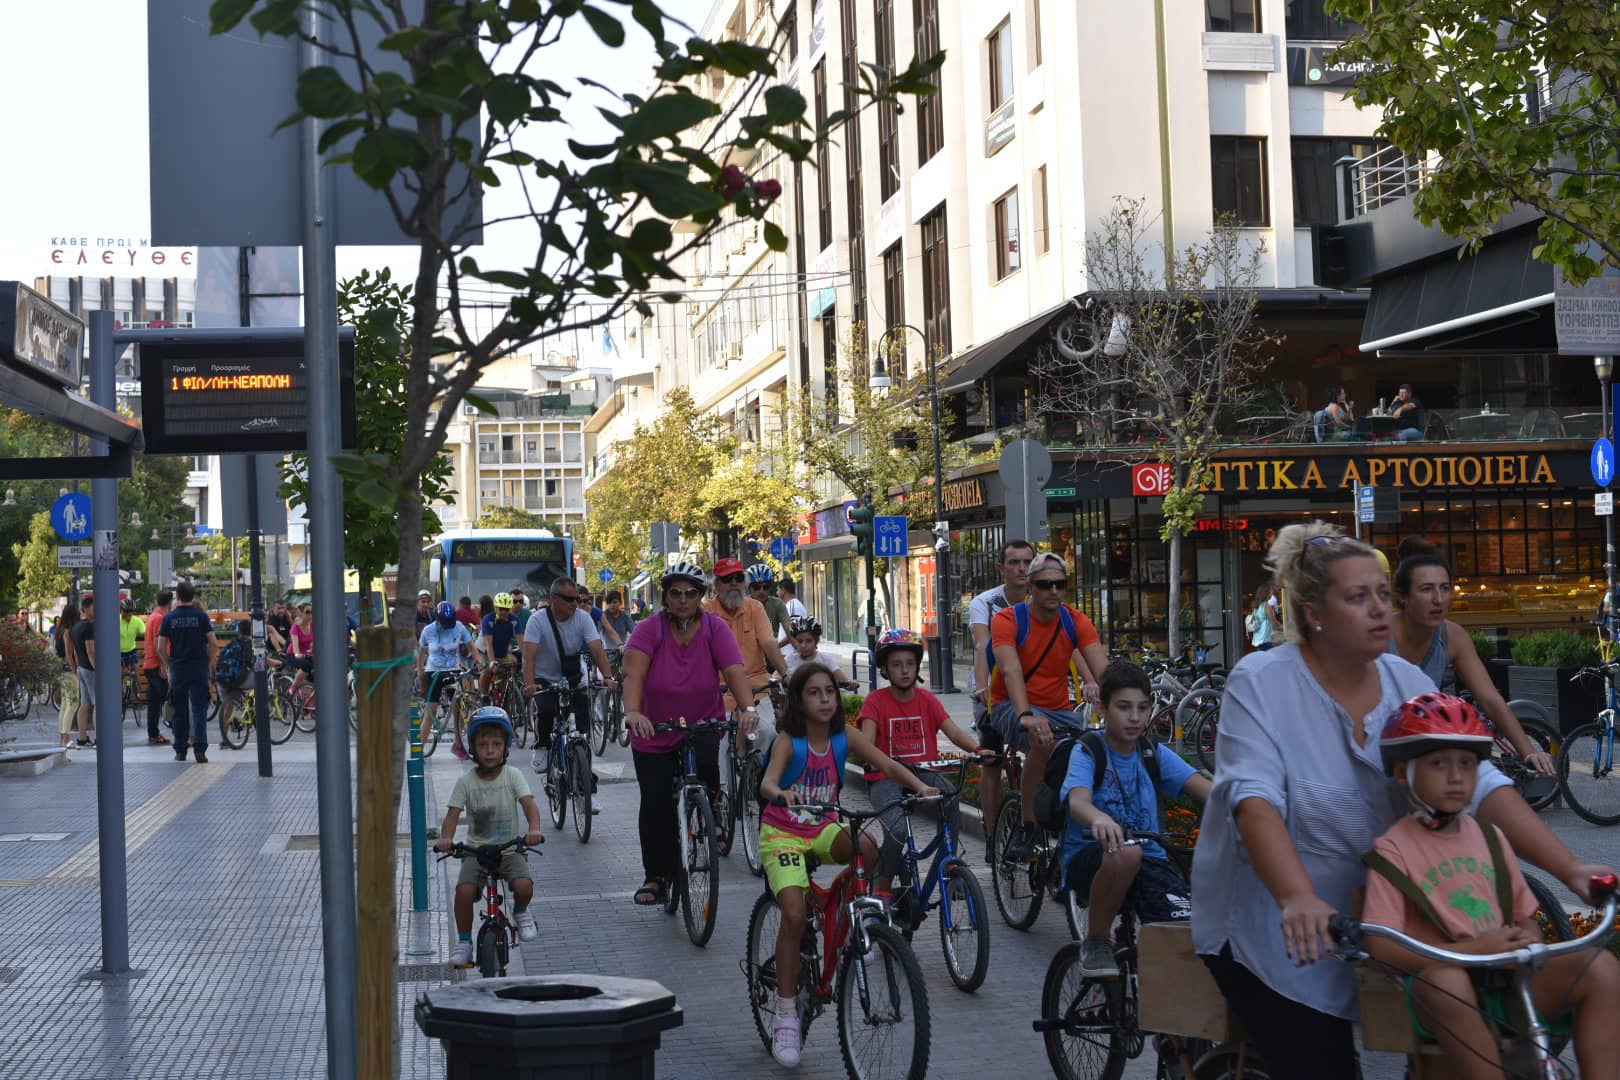 Γέμισε ποδήλατα το κέντρο της Λάρισας (Εικόνες)